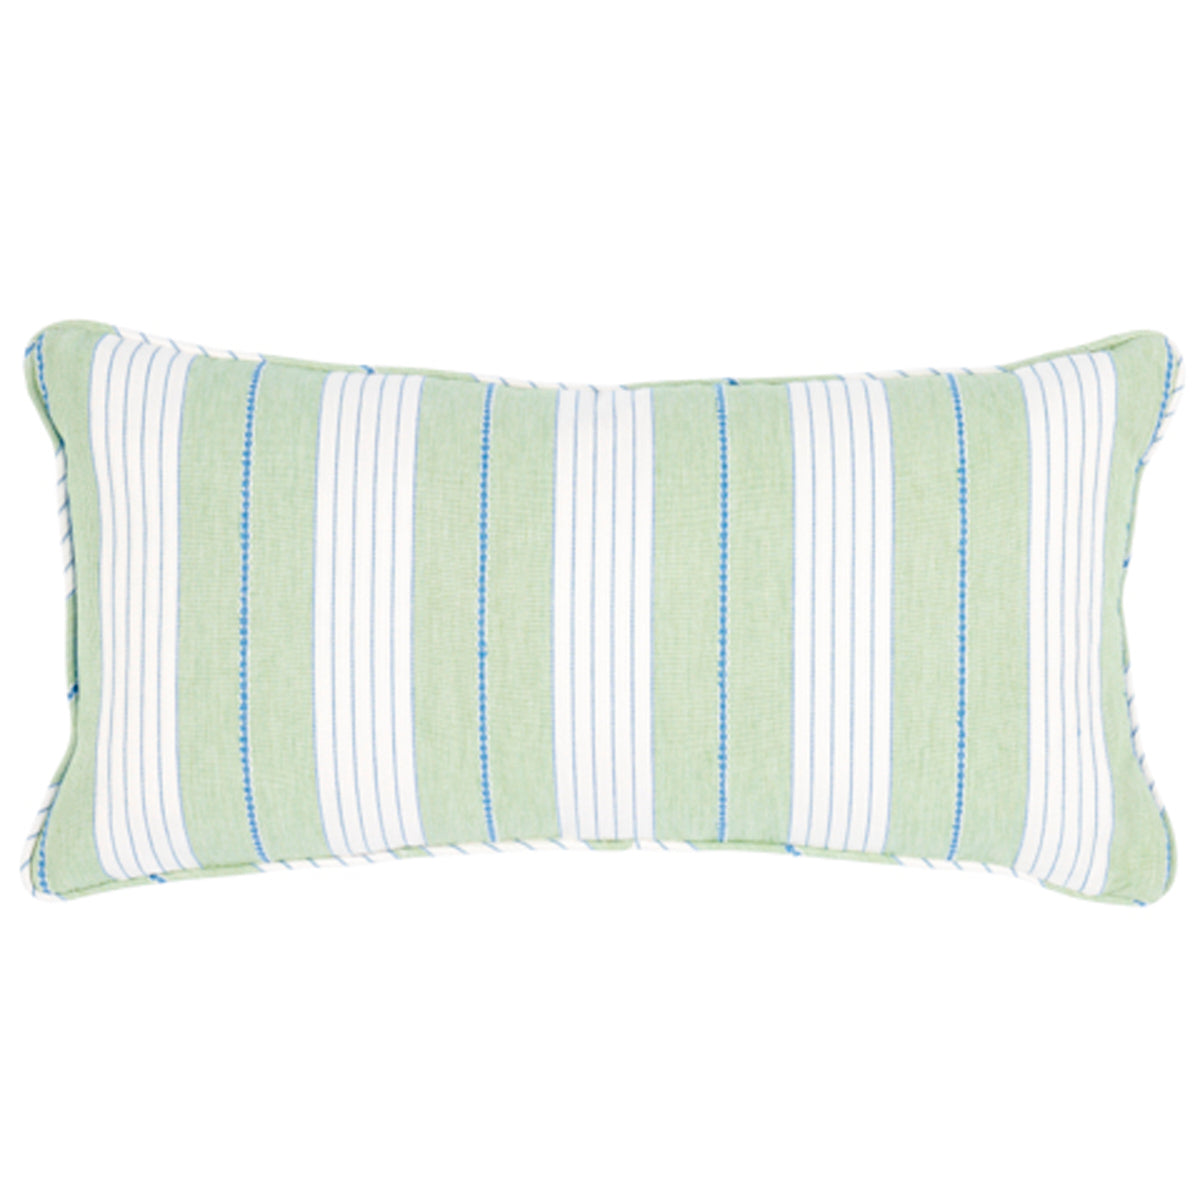 Purchase So7137618 | Audrey Stripe Pillow, Green - Schumacher Pillows